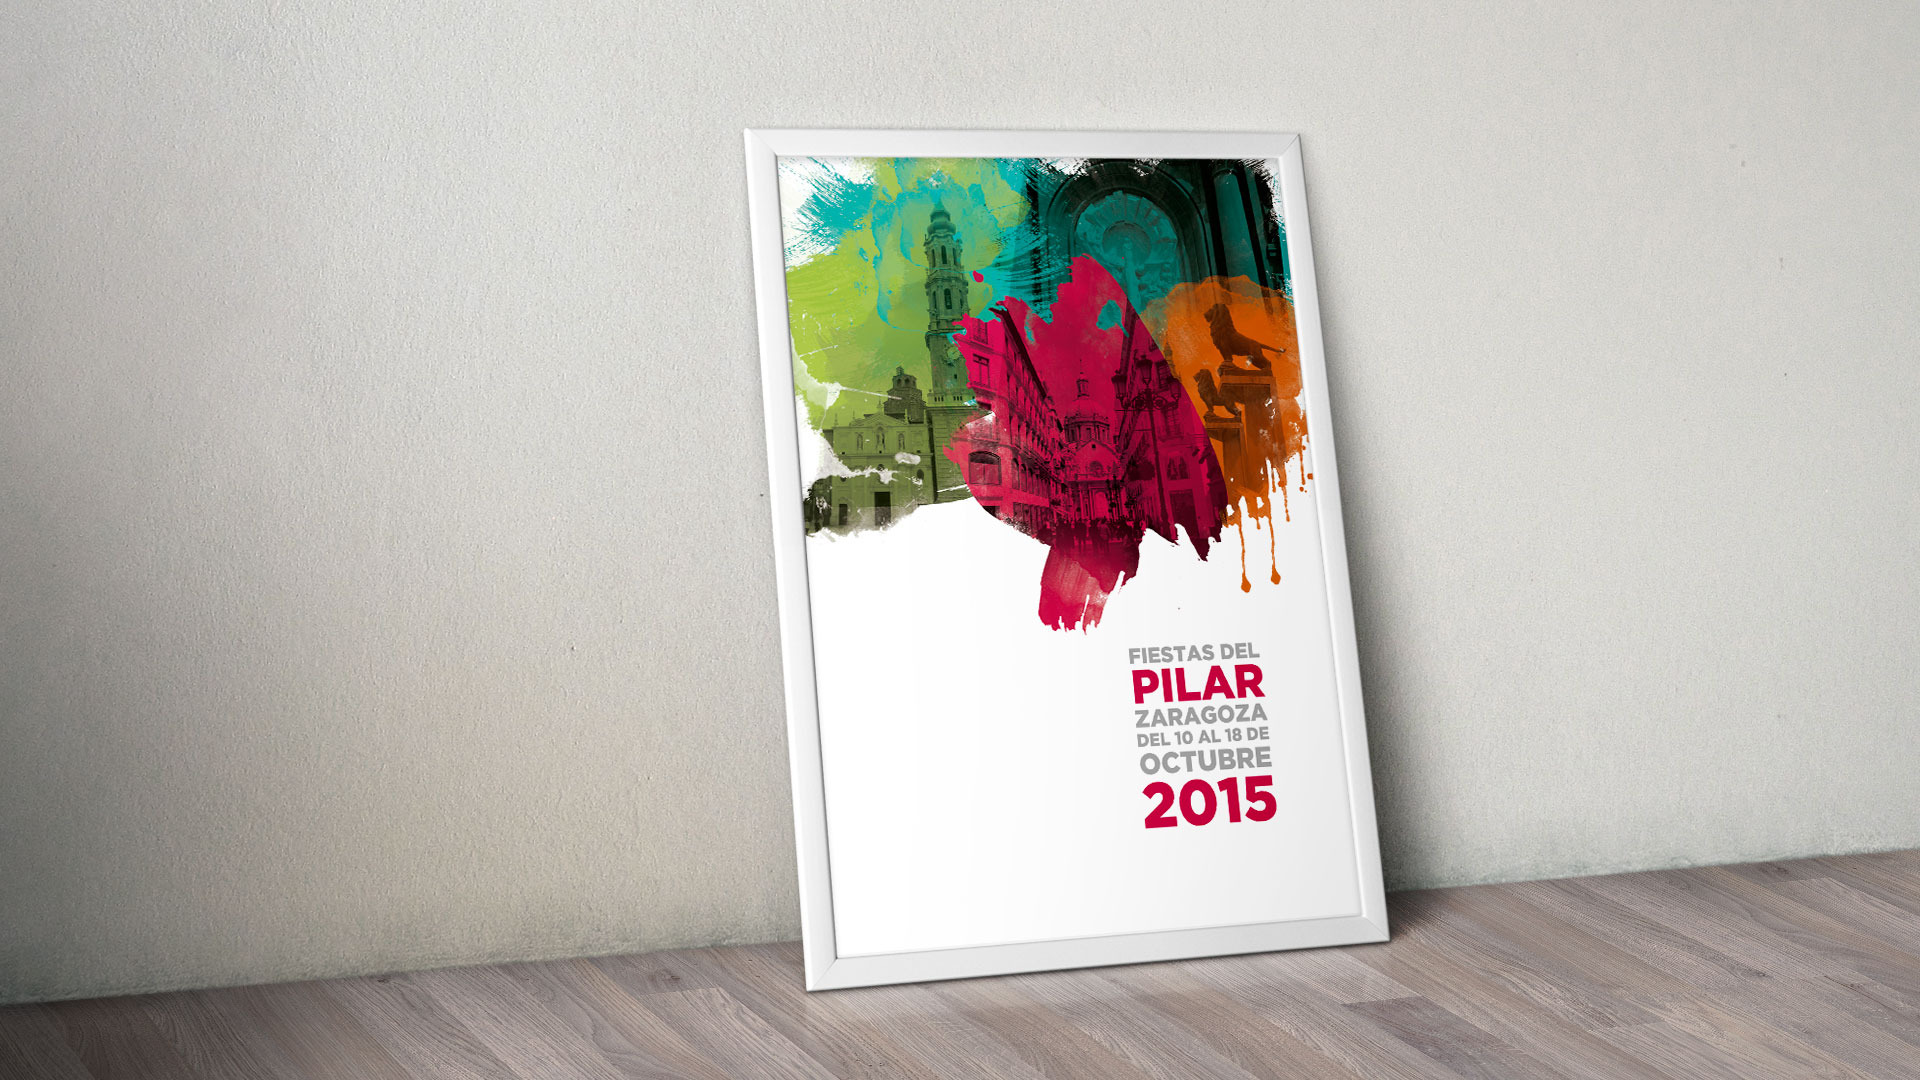 Diseño de cartel propuesto para las Fiestas del Pilar 2015 de Zaragoza